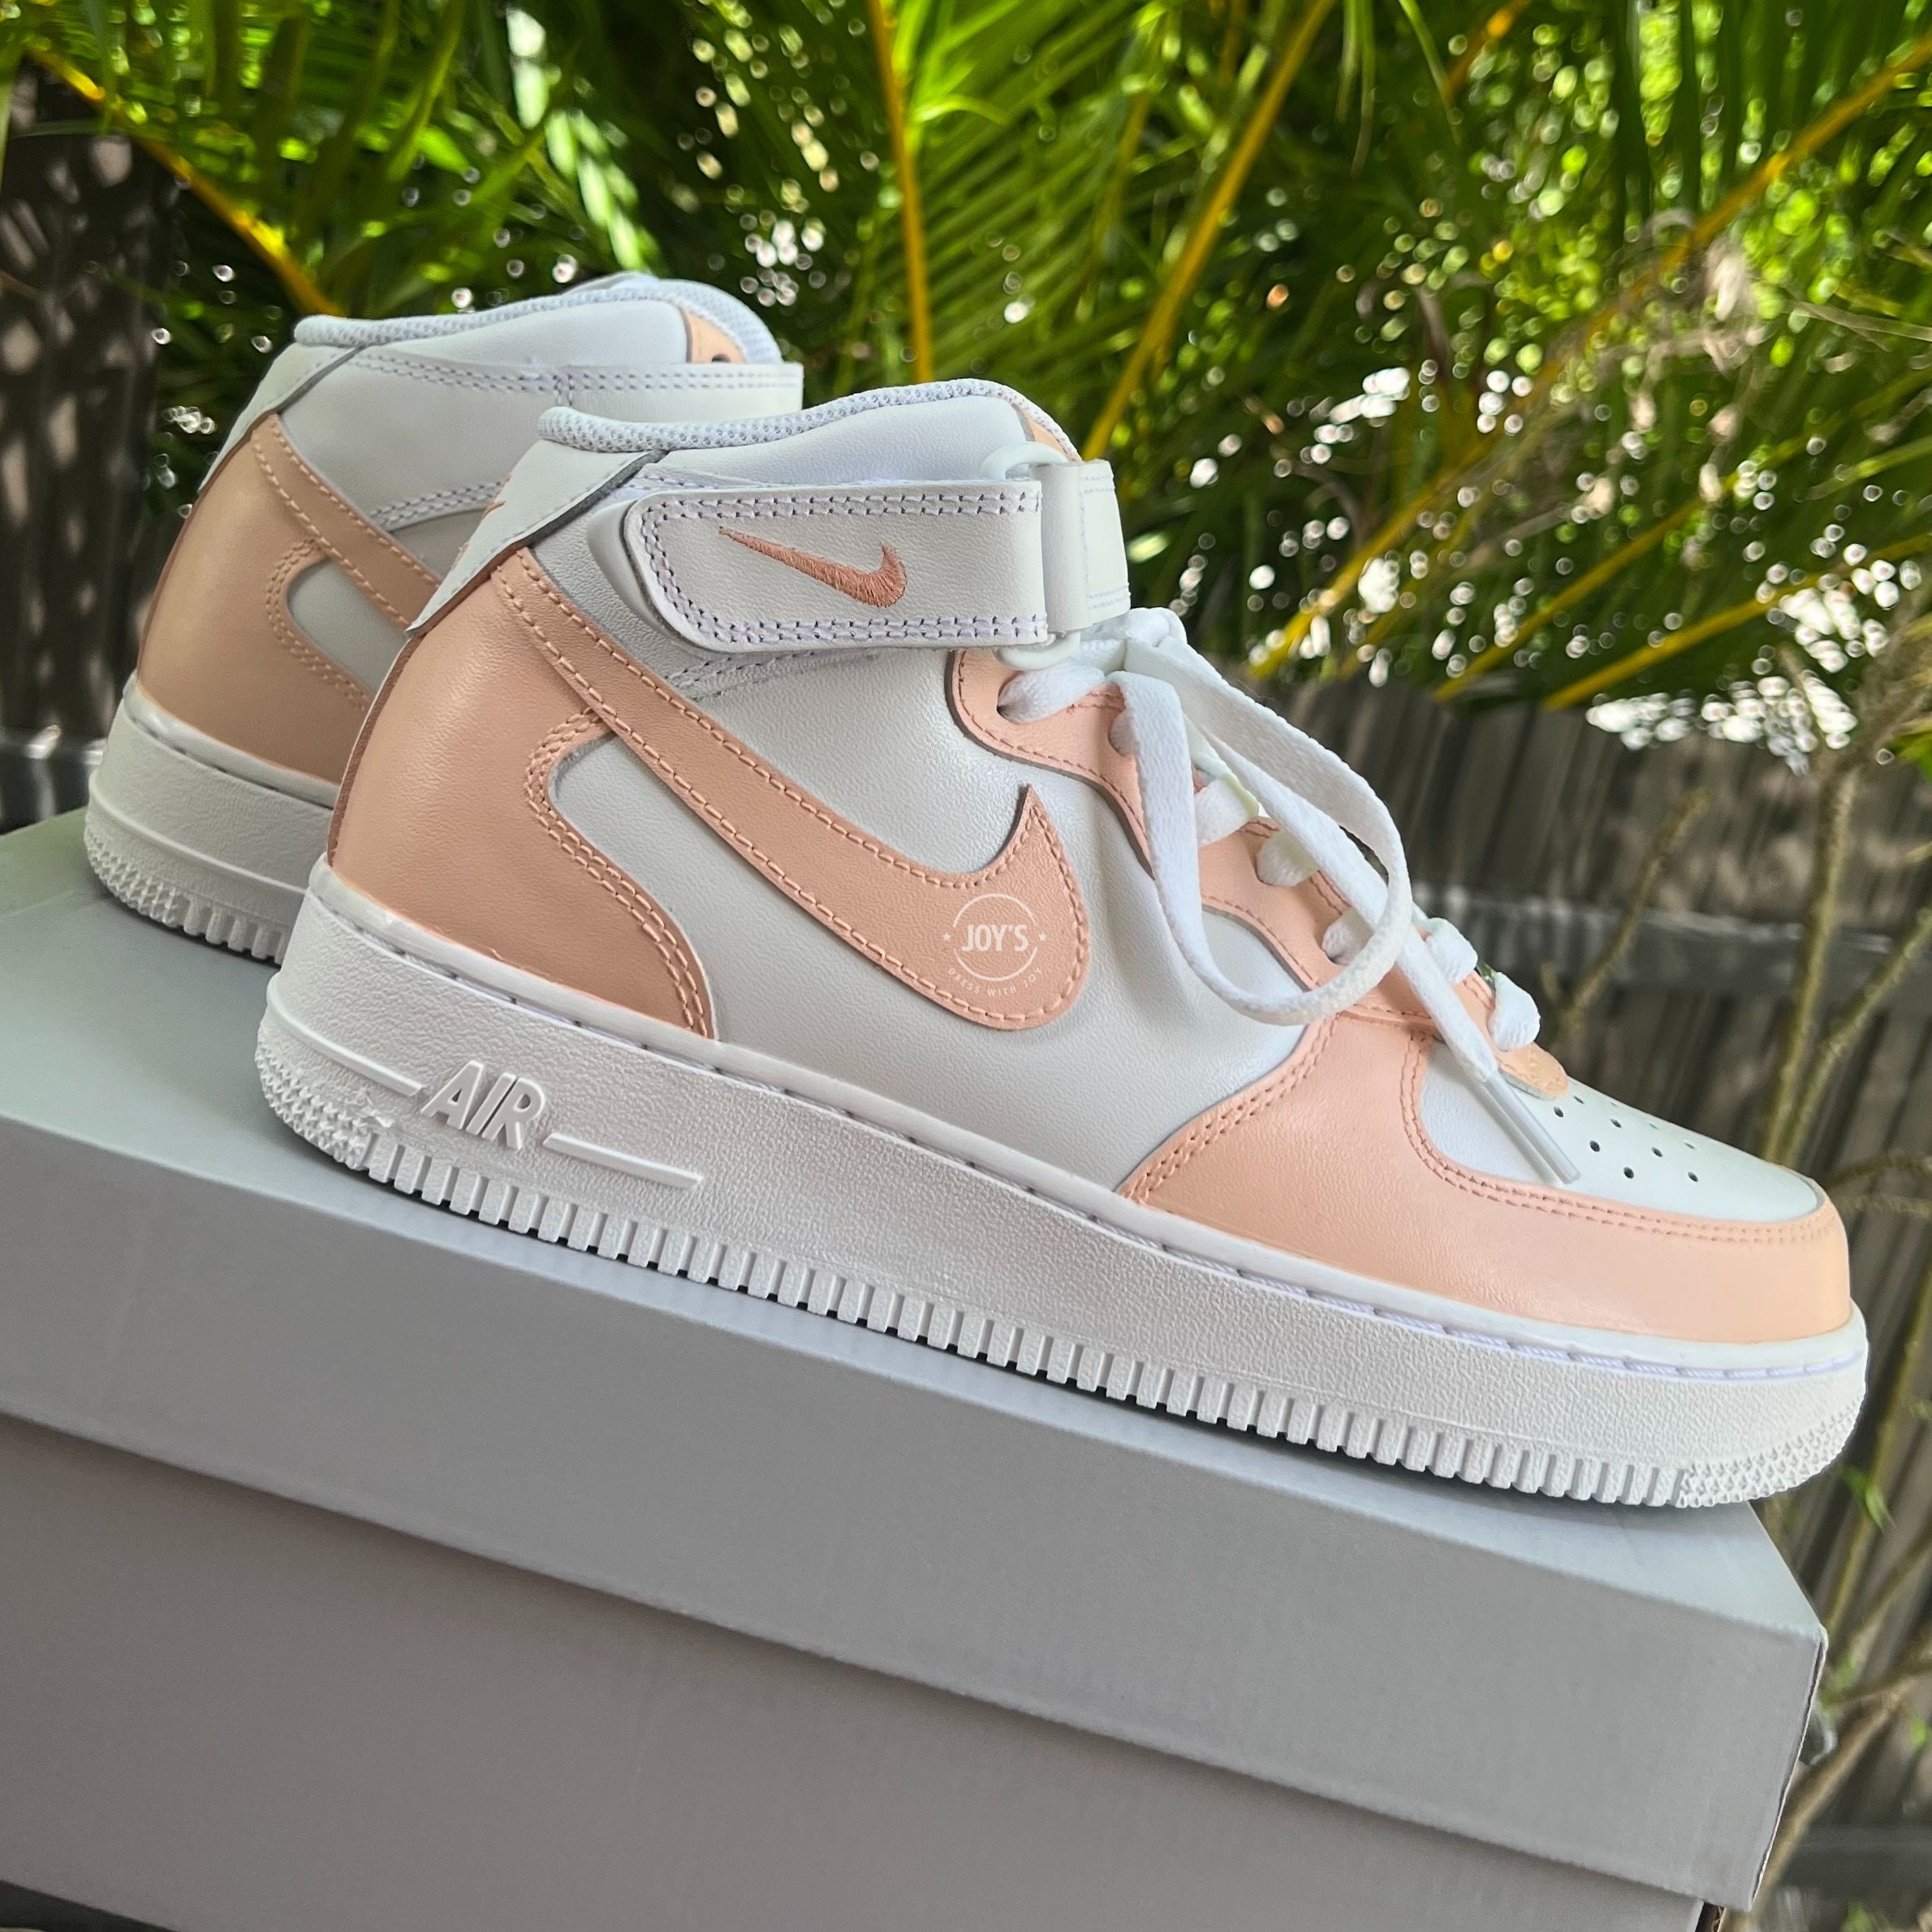 Peach Custom Air Force 1 Low/Mid/High Sneakers Low / 5.5 Y / 7 W